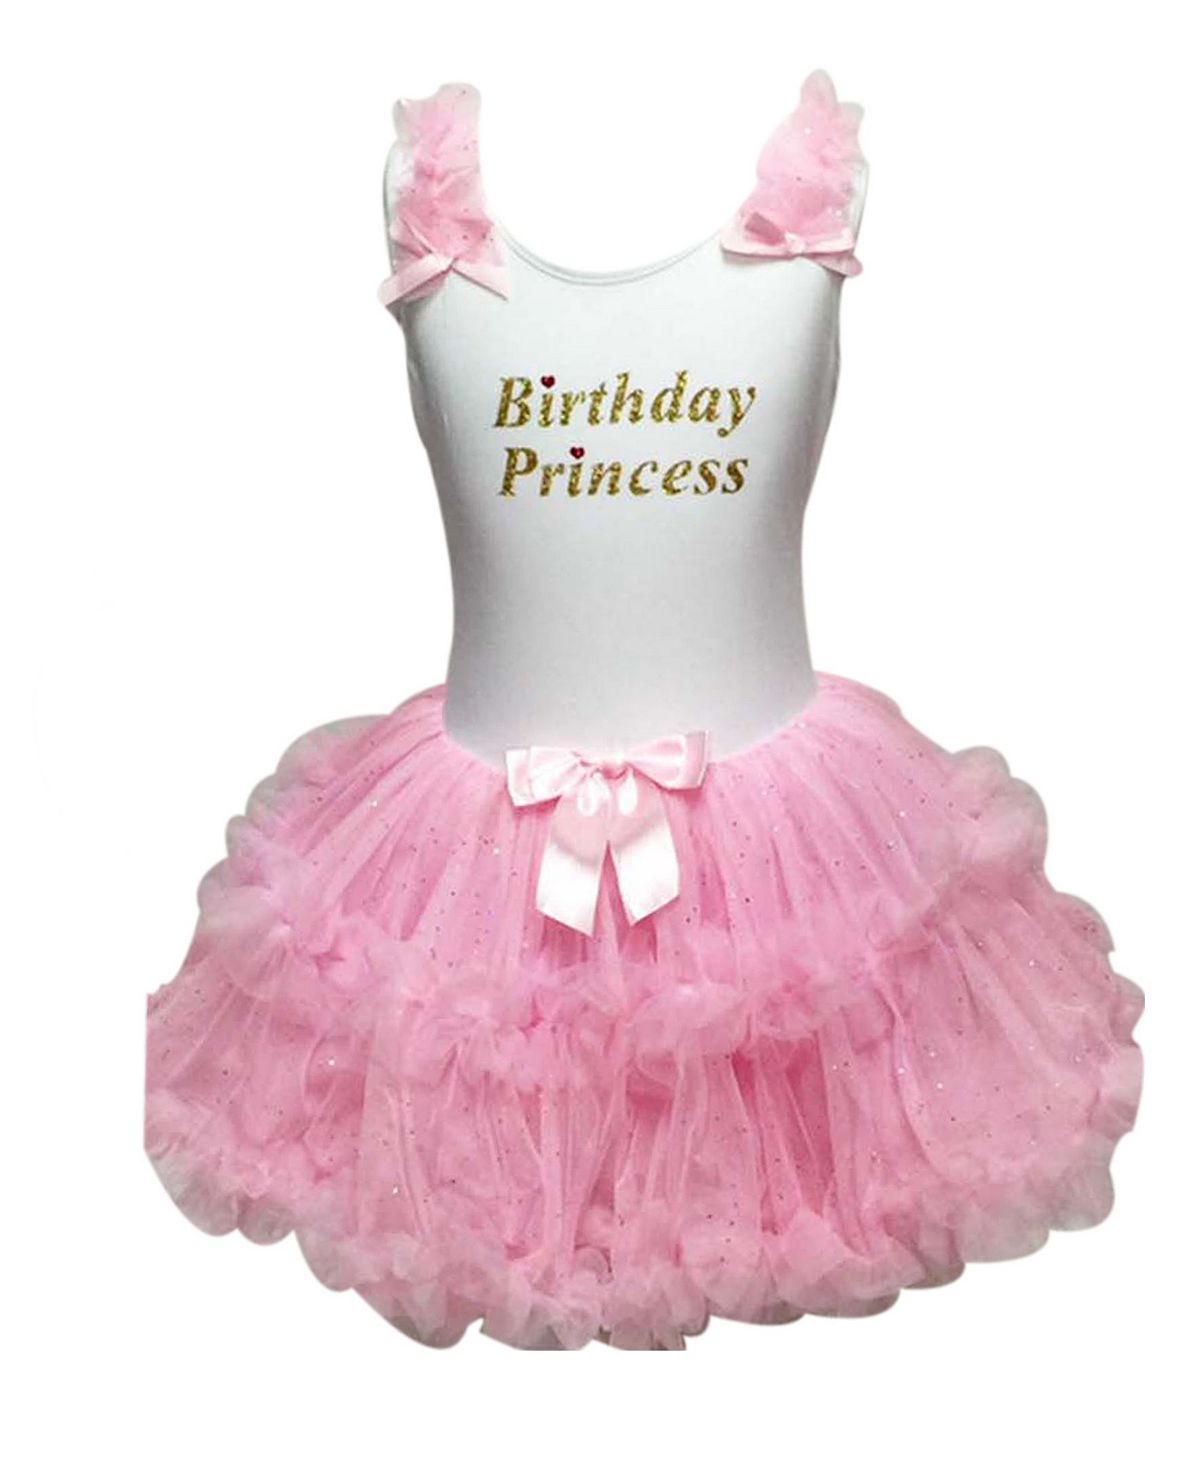 Платье принцессы с рюшами на день рождения для маленьких девочек Popatu мягкое хлопковое платье принцессы покахонтас для девочек косплей на хэллоуин день рождения вечерние вечеринку повседневный игровой кост